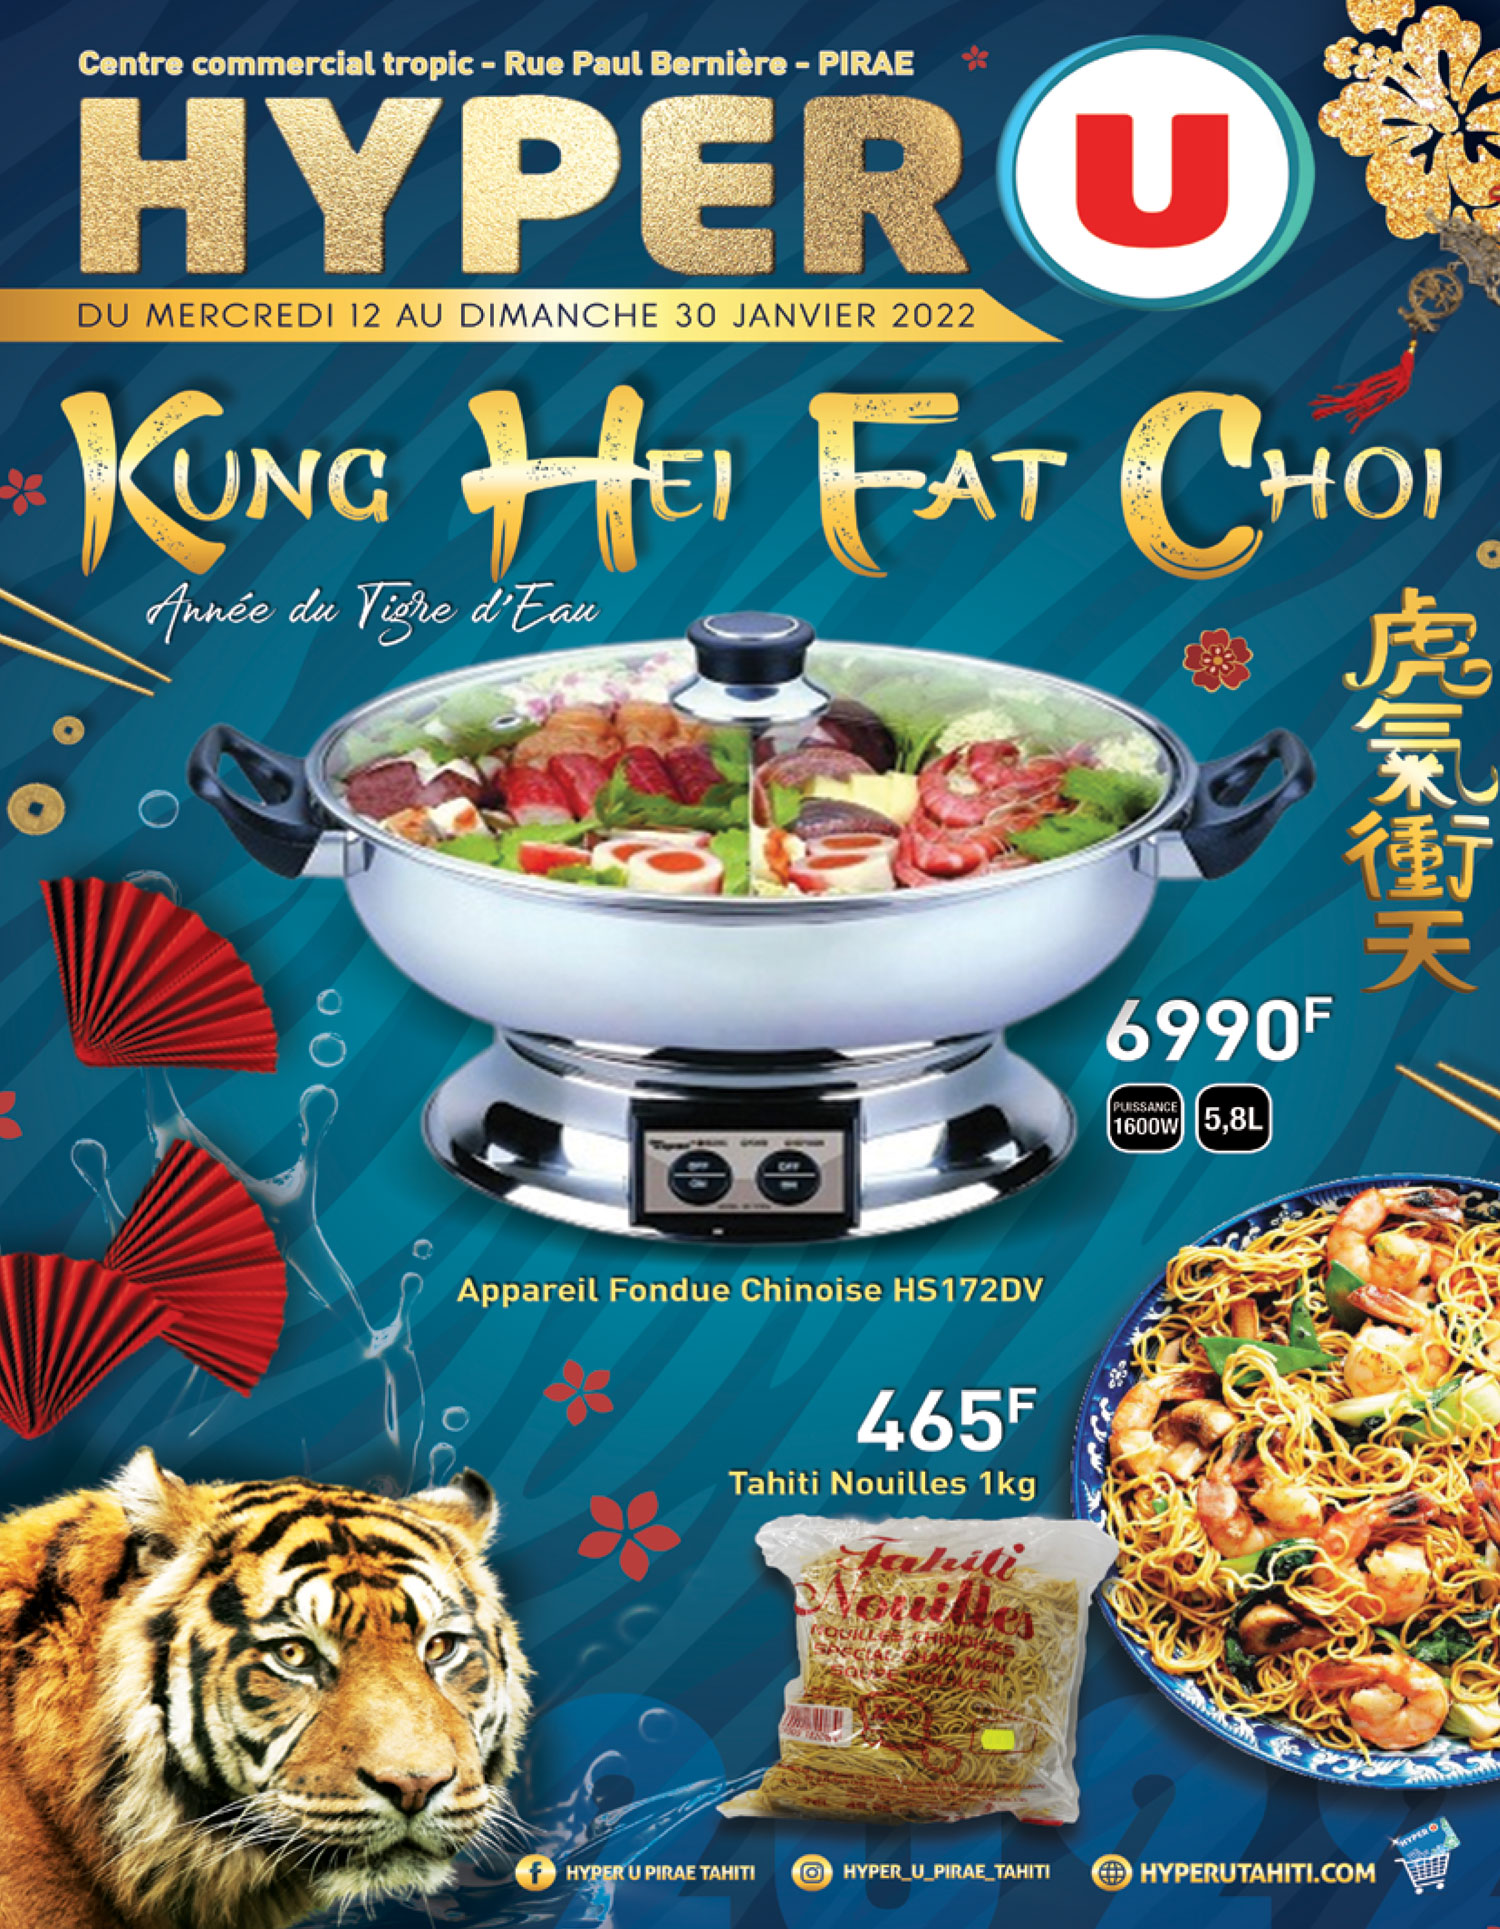 Kung Hei Fat Choi avec Hyper U